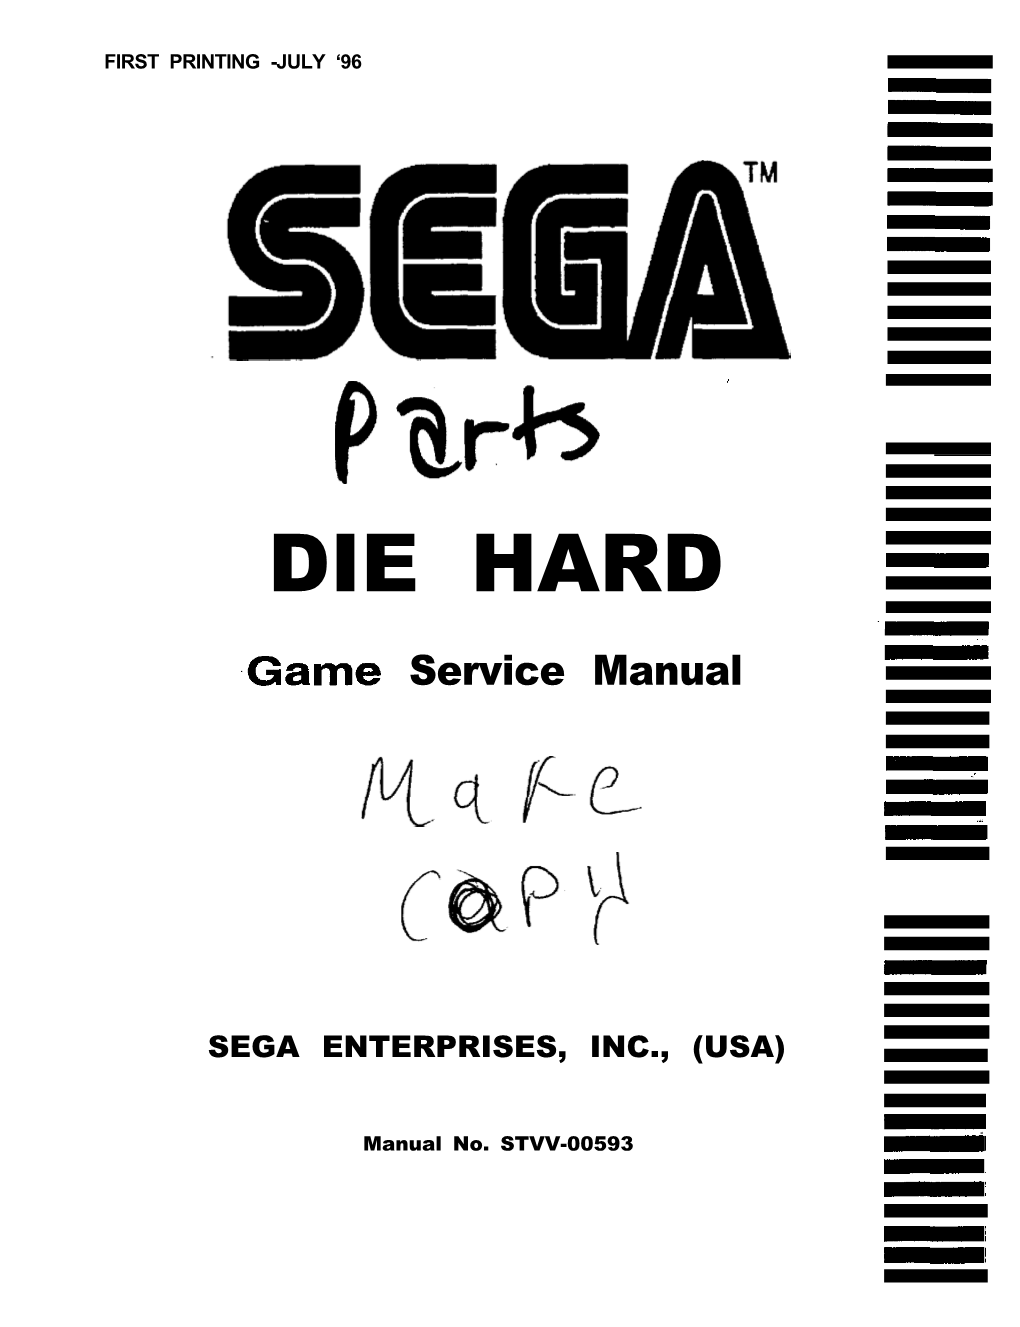 DIE HARD .Game Service Manual